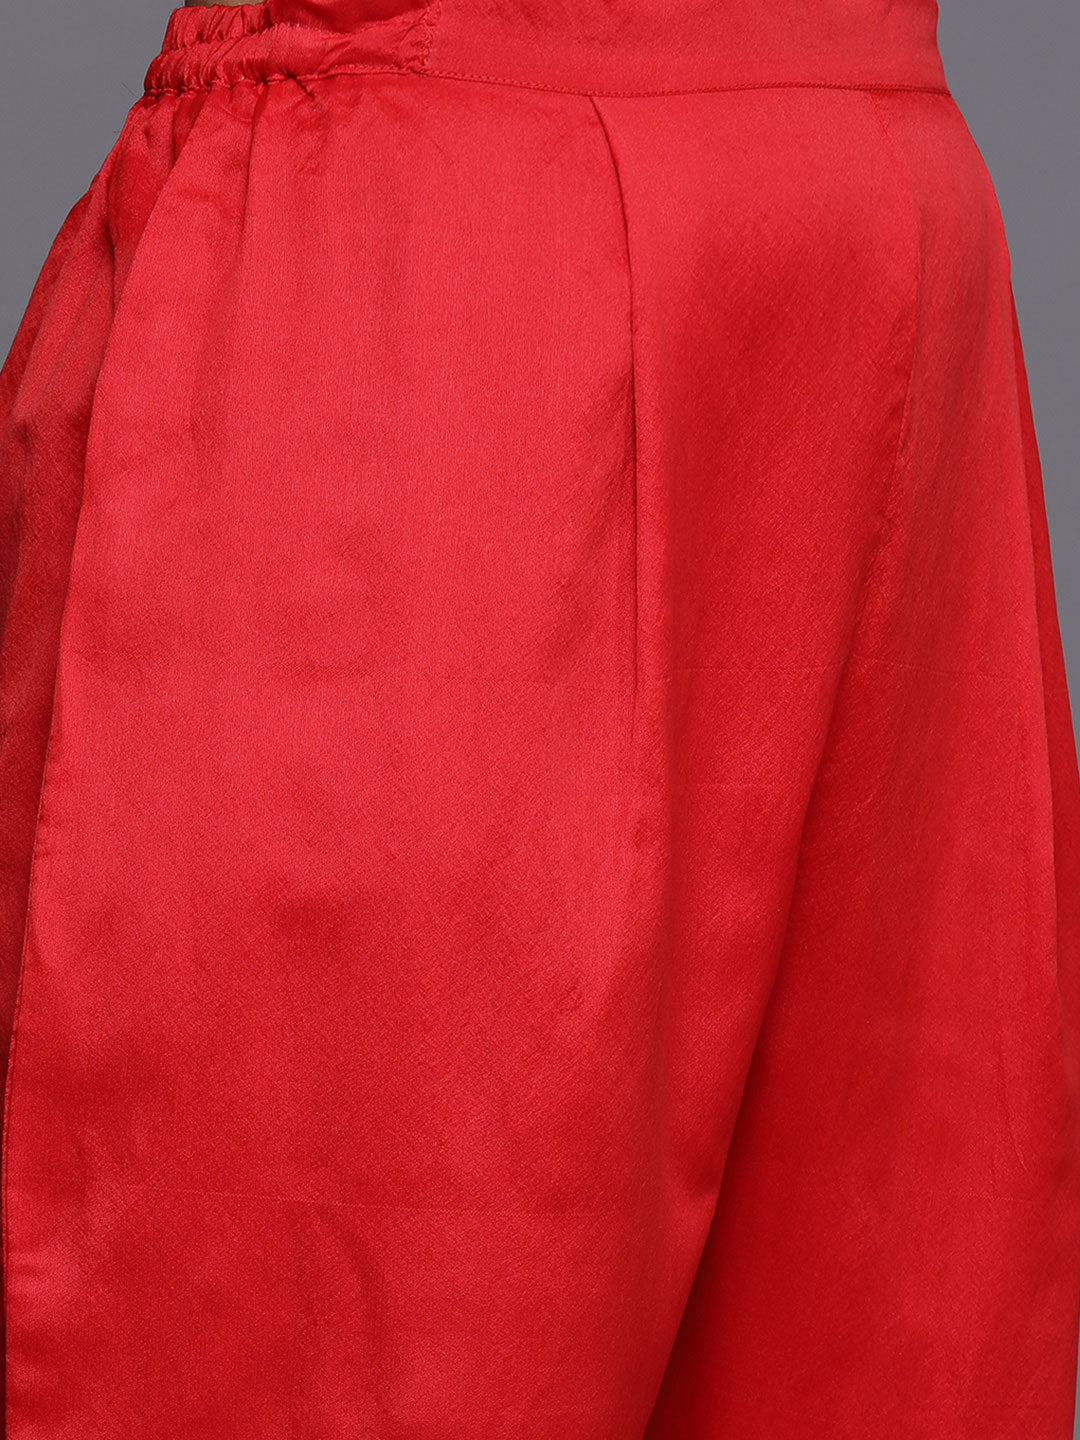 Women's Red Jacquard Kurta Trousers Set